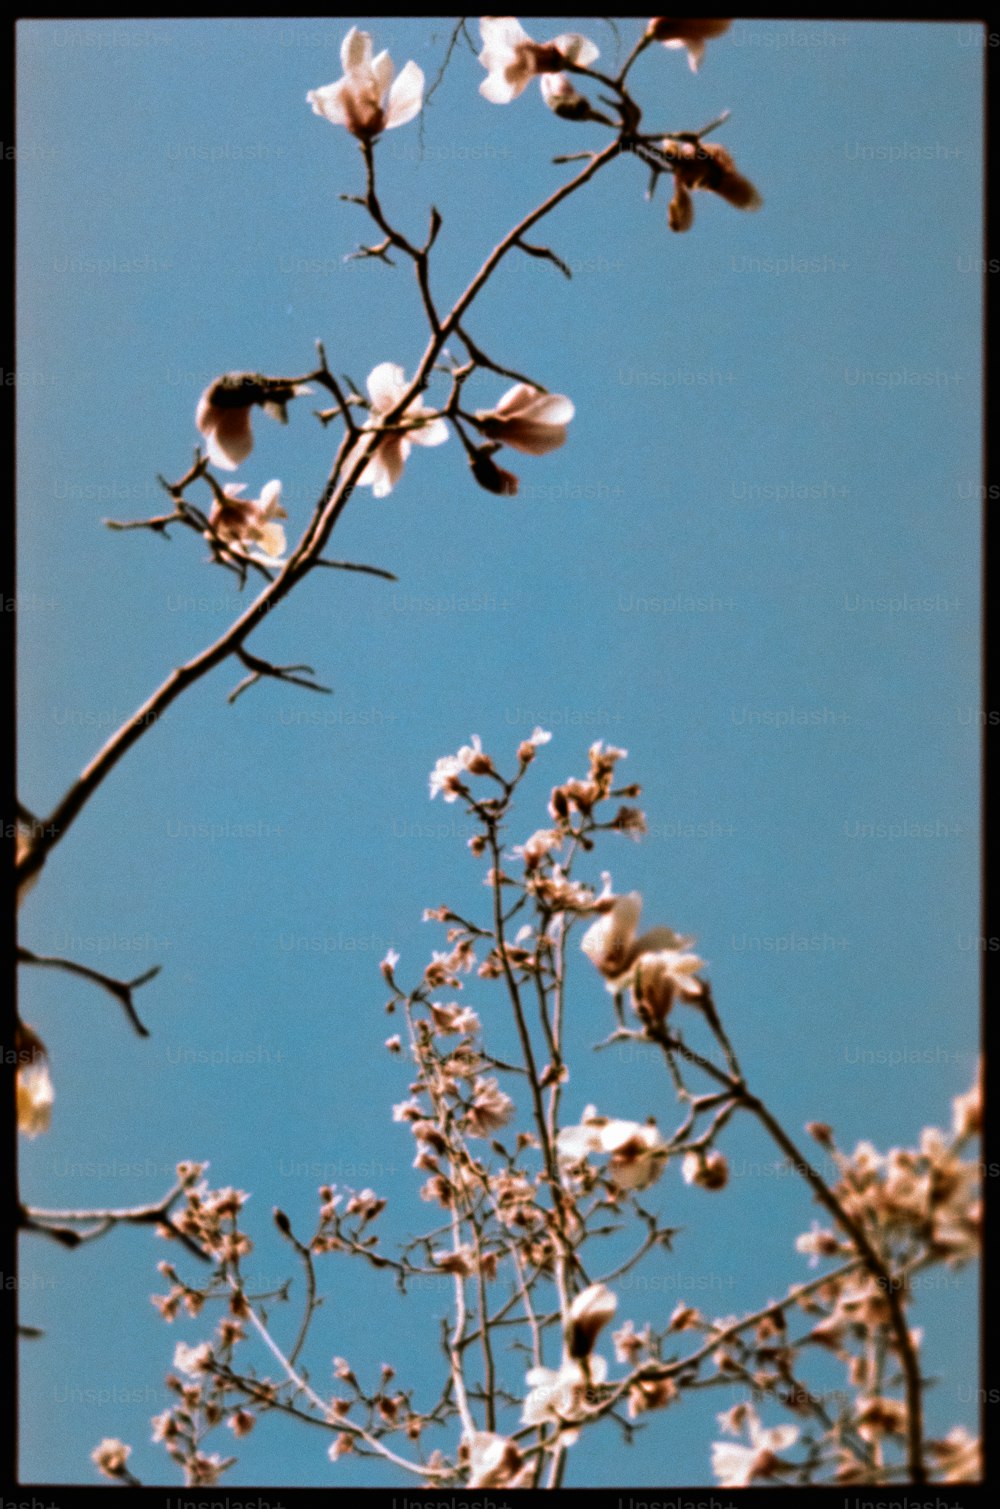 una rama de árbol con flores blancas contra un cielo azul